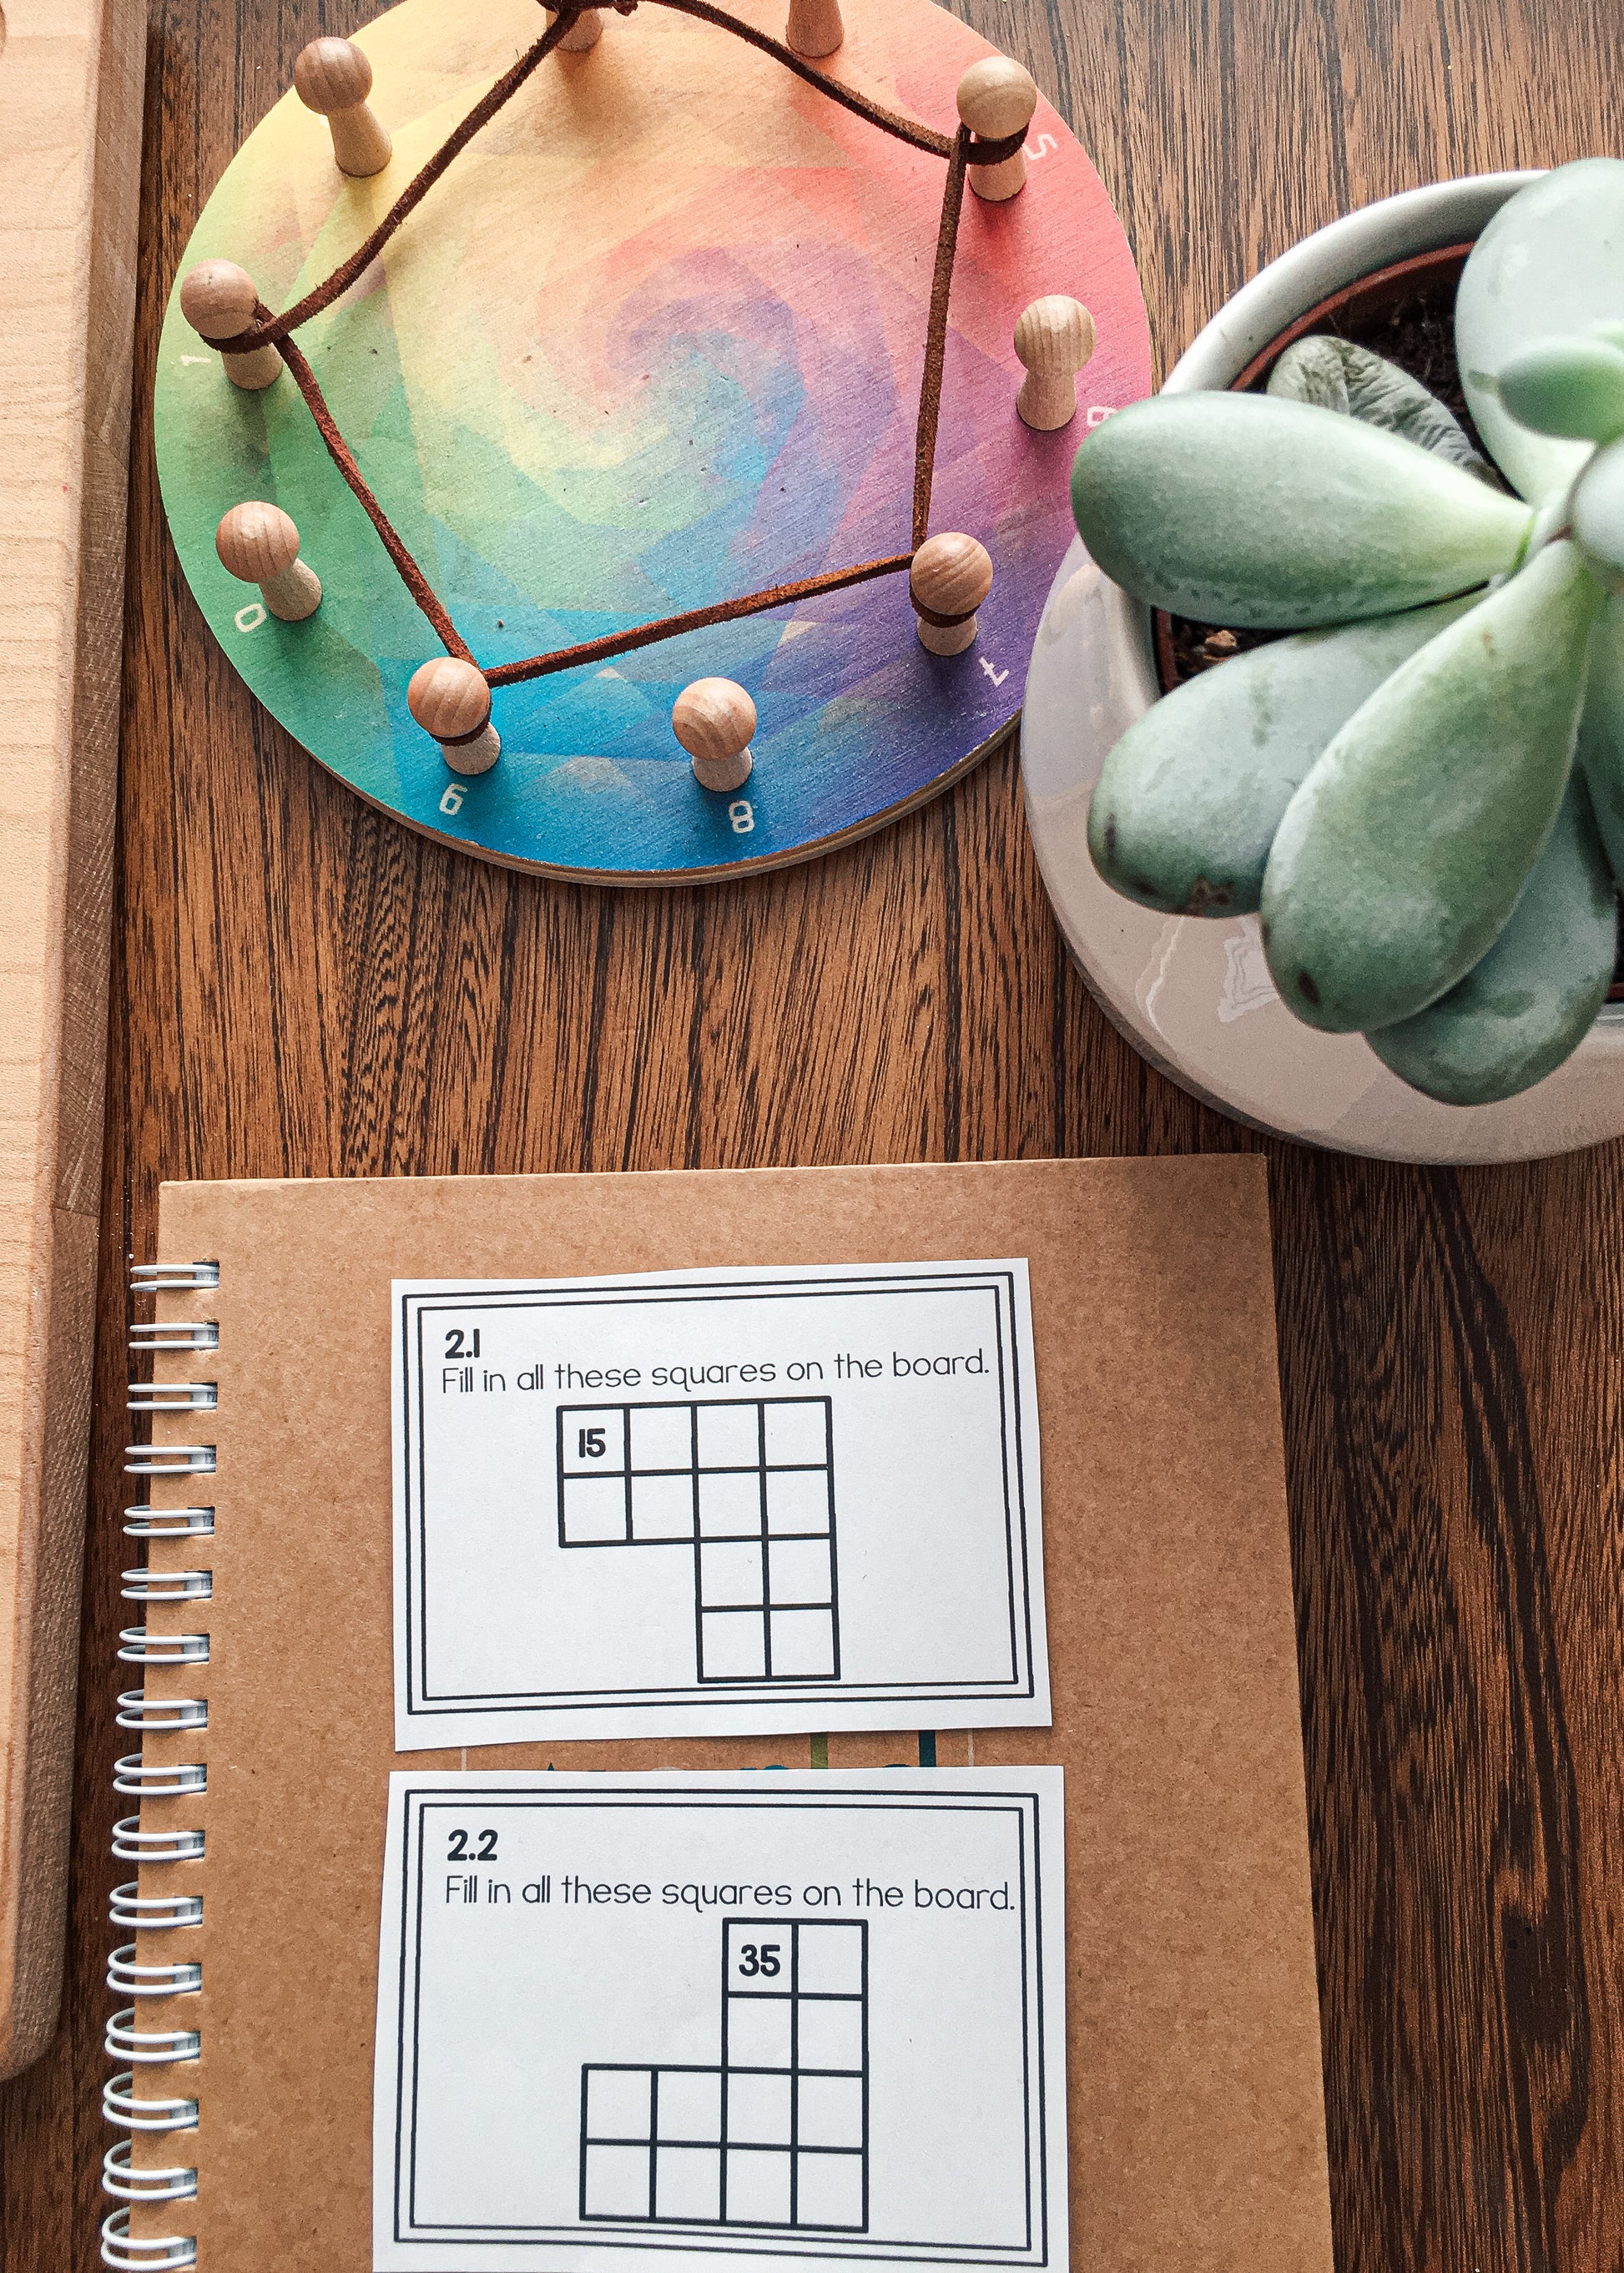 Montessori math: hundreds board task cards SET 2 - montessorikiwi